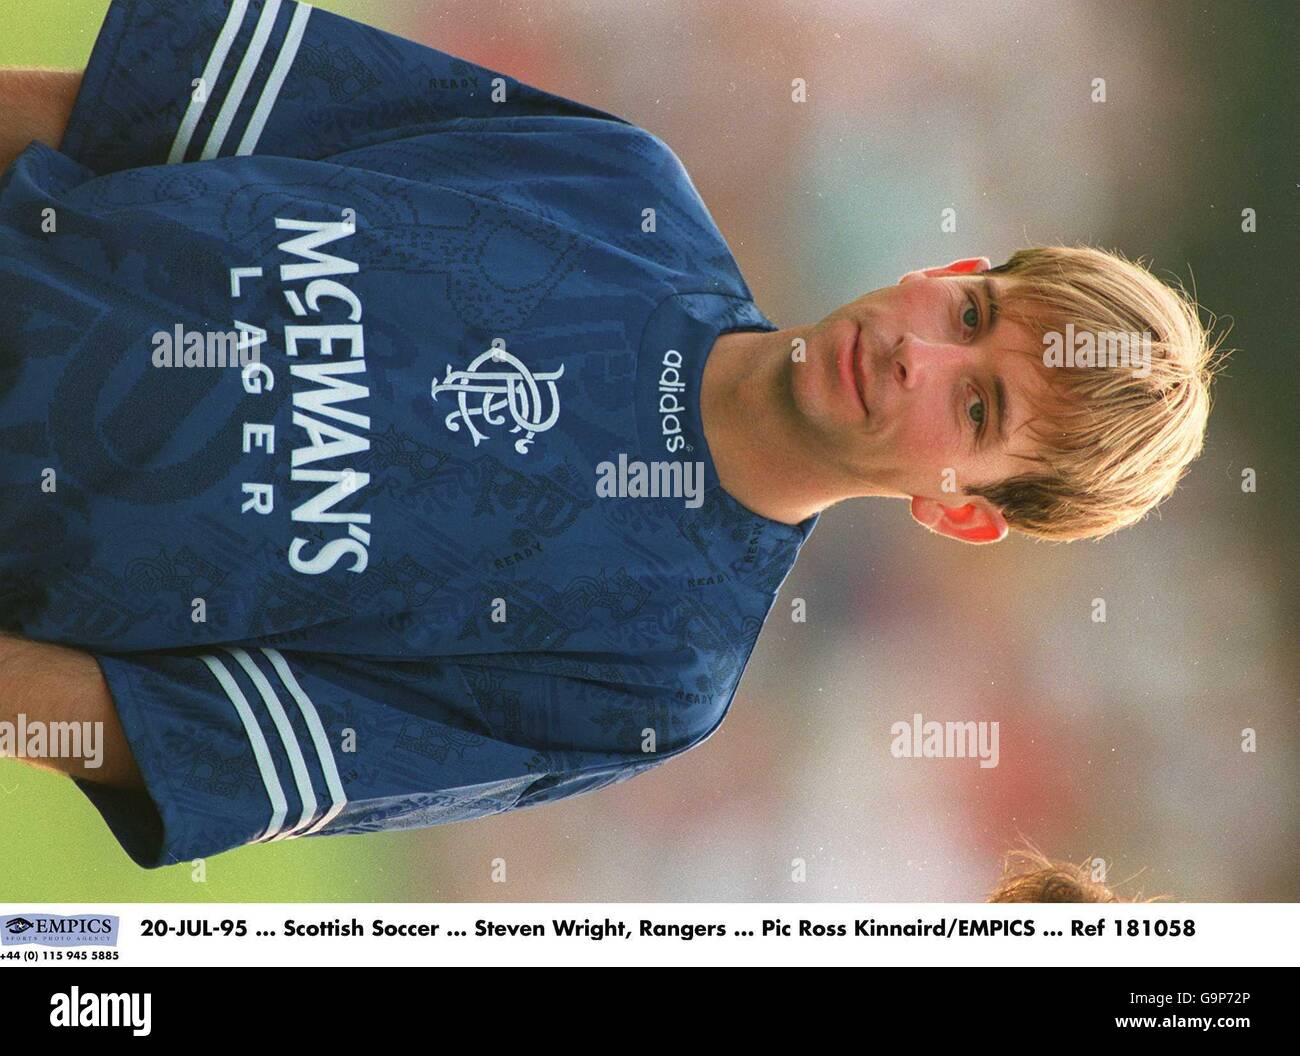 Steven Wright. 20-JUL-95. Scottish Soccer. Steven Wright, Rangers Stock Photo